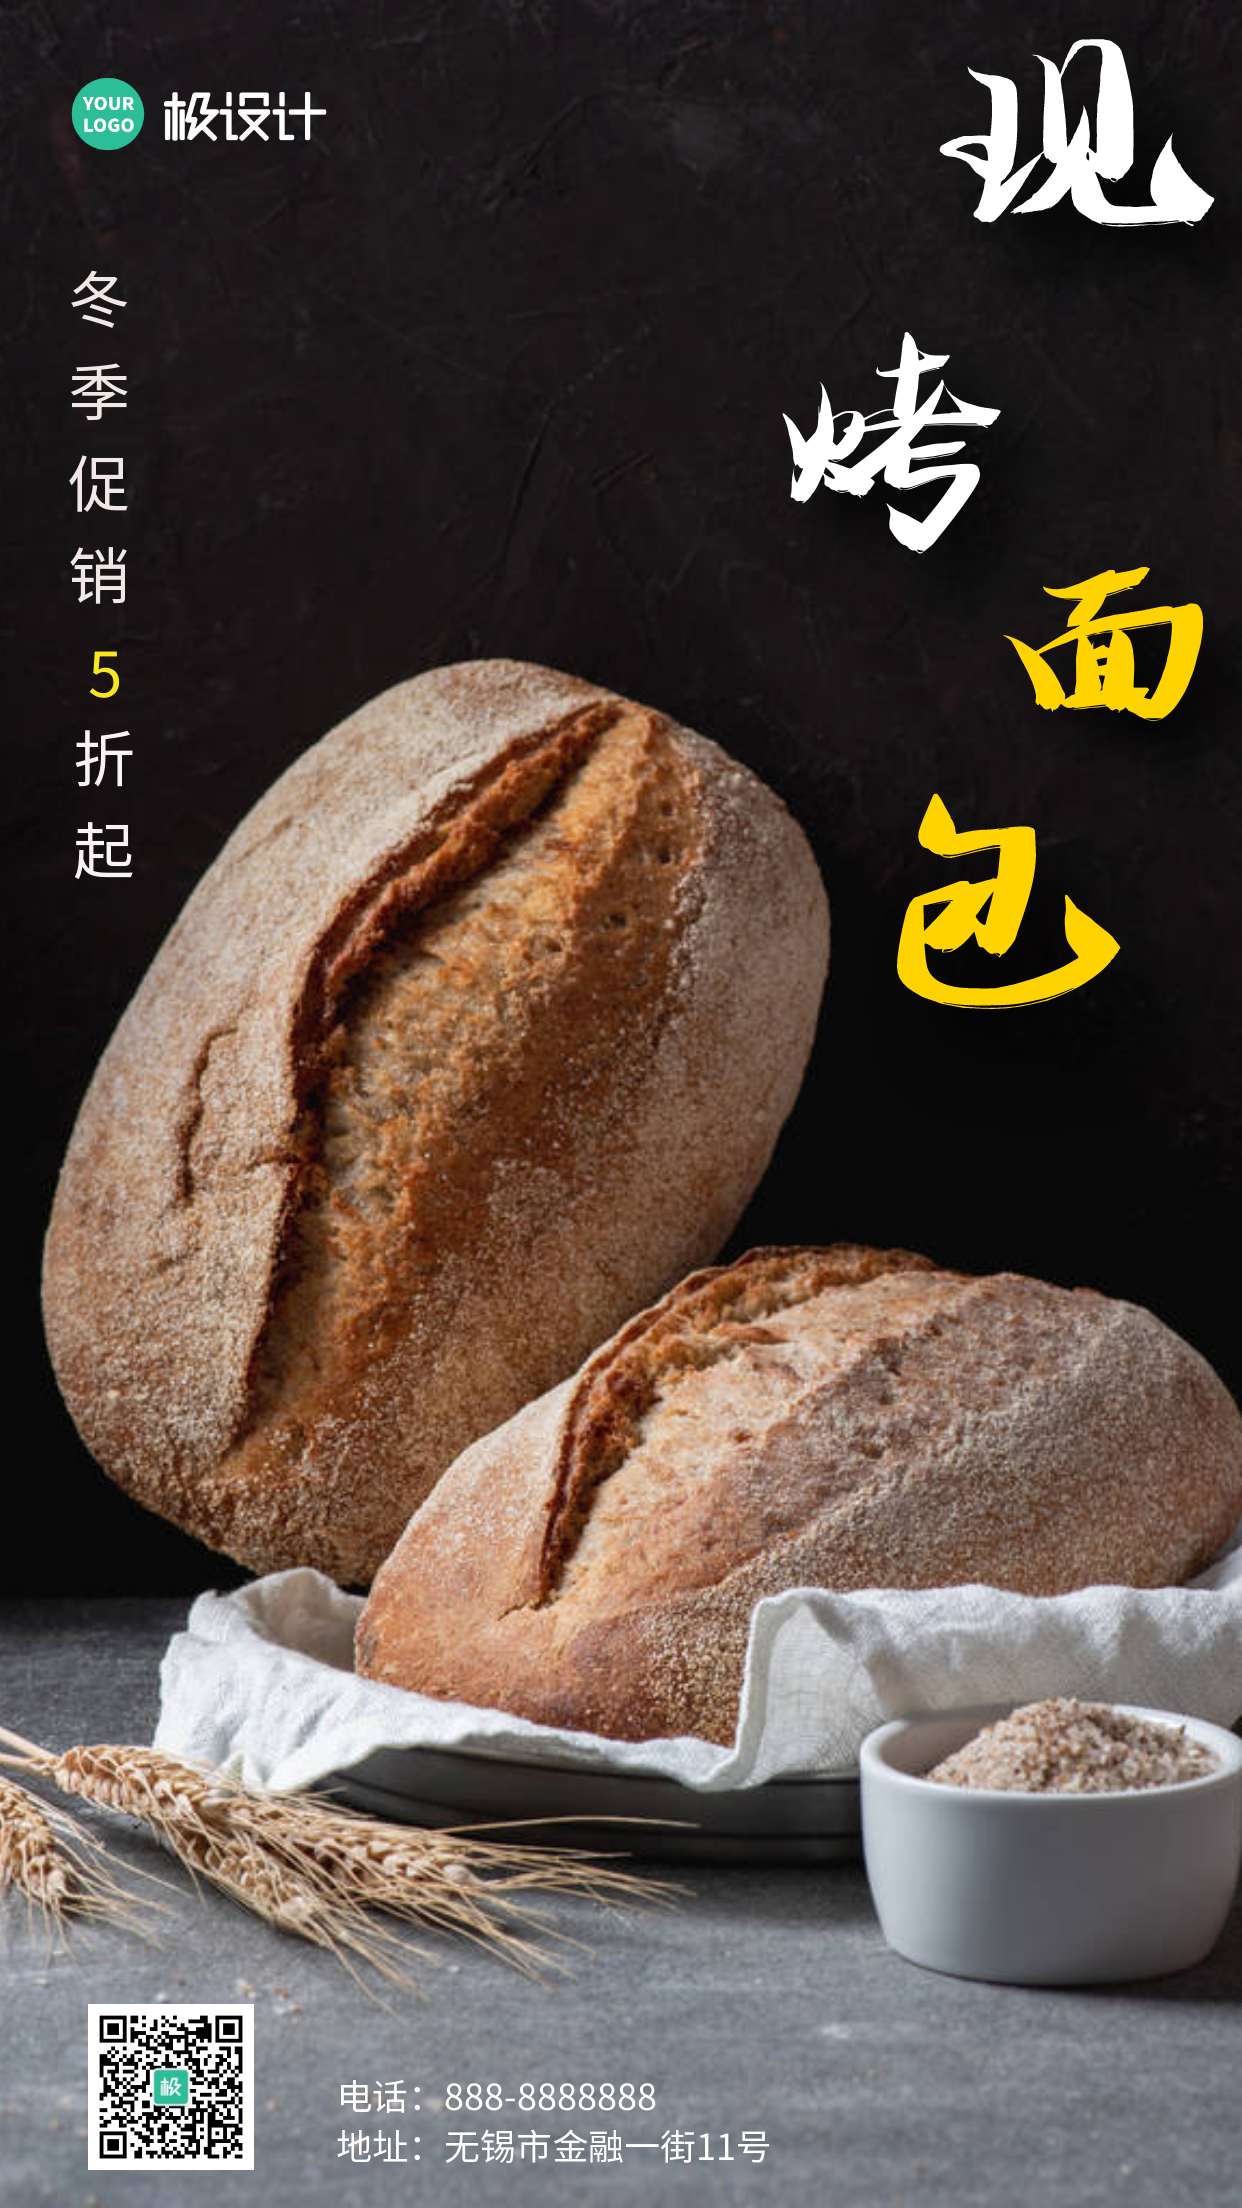 简约风格冬季现烤面包促销宣传手机海报